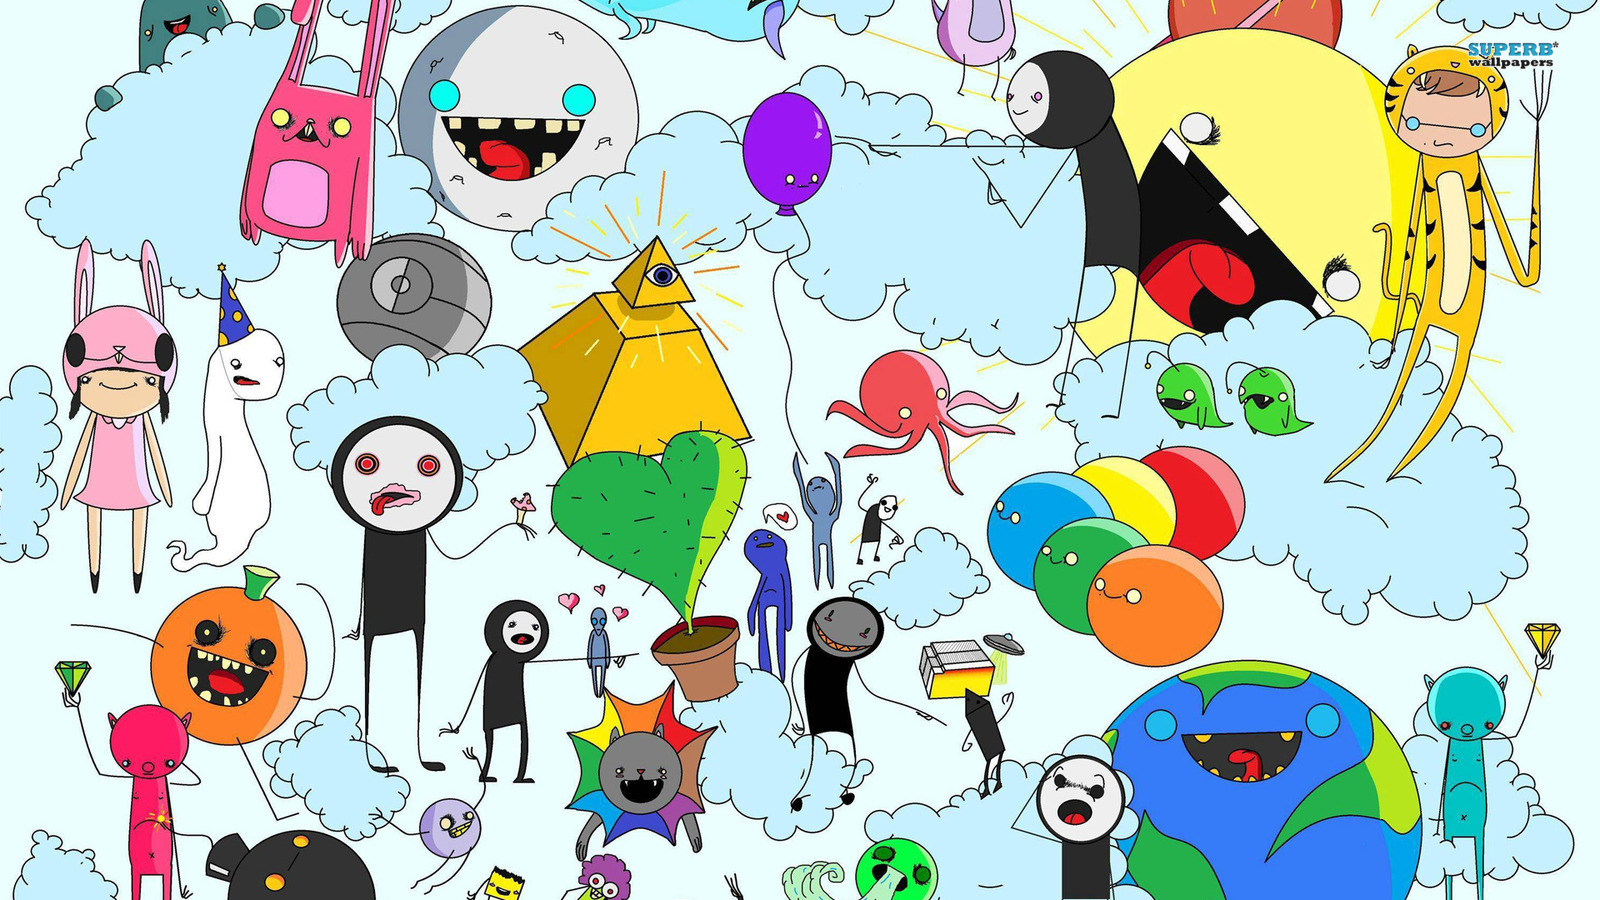 Adventure Time - Cartoon Network Wallpaper (38672273) - Fanpop